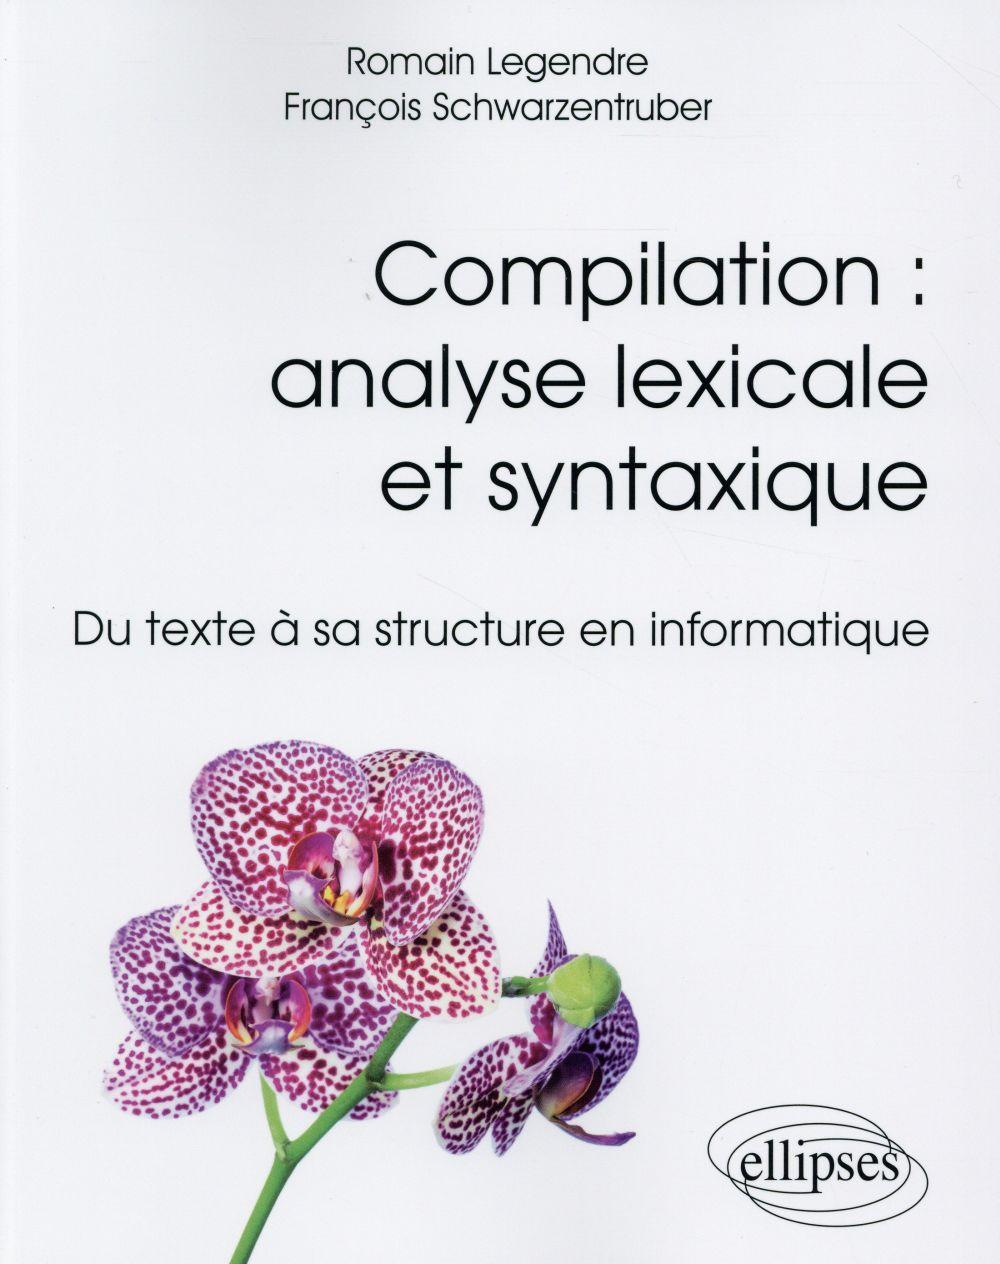 Compilation analyse lexicale et syntaxique du texte a sa structure en informatique